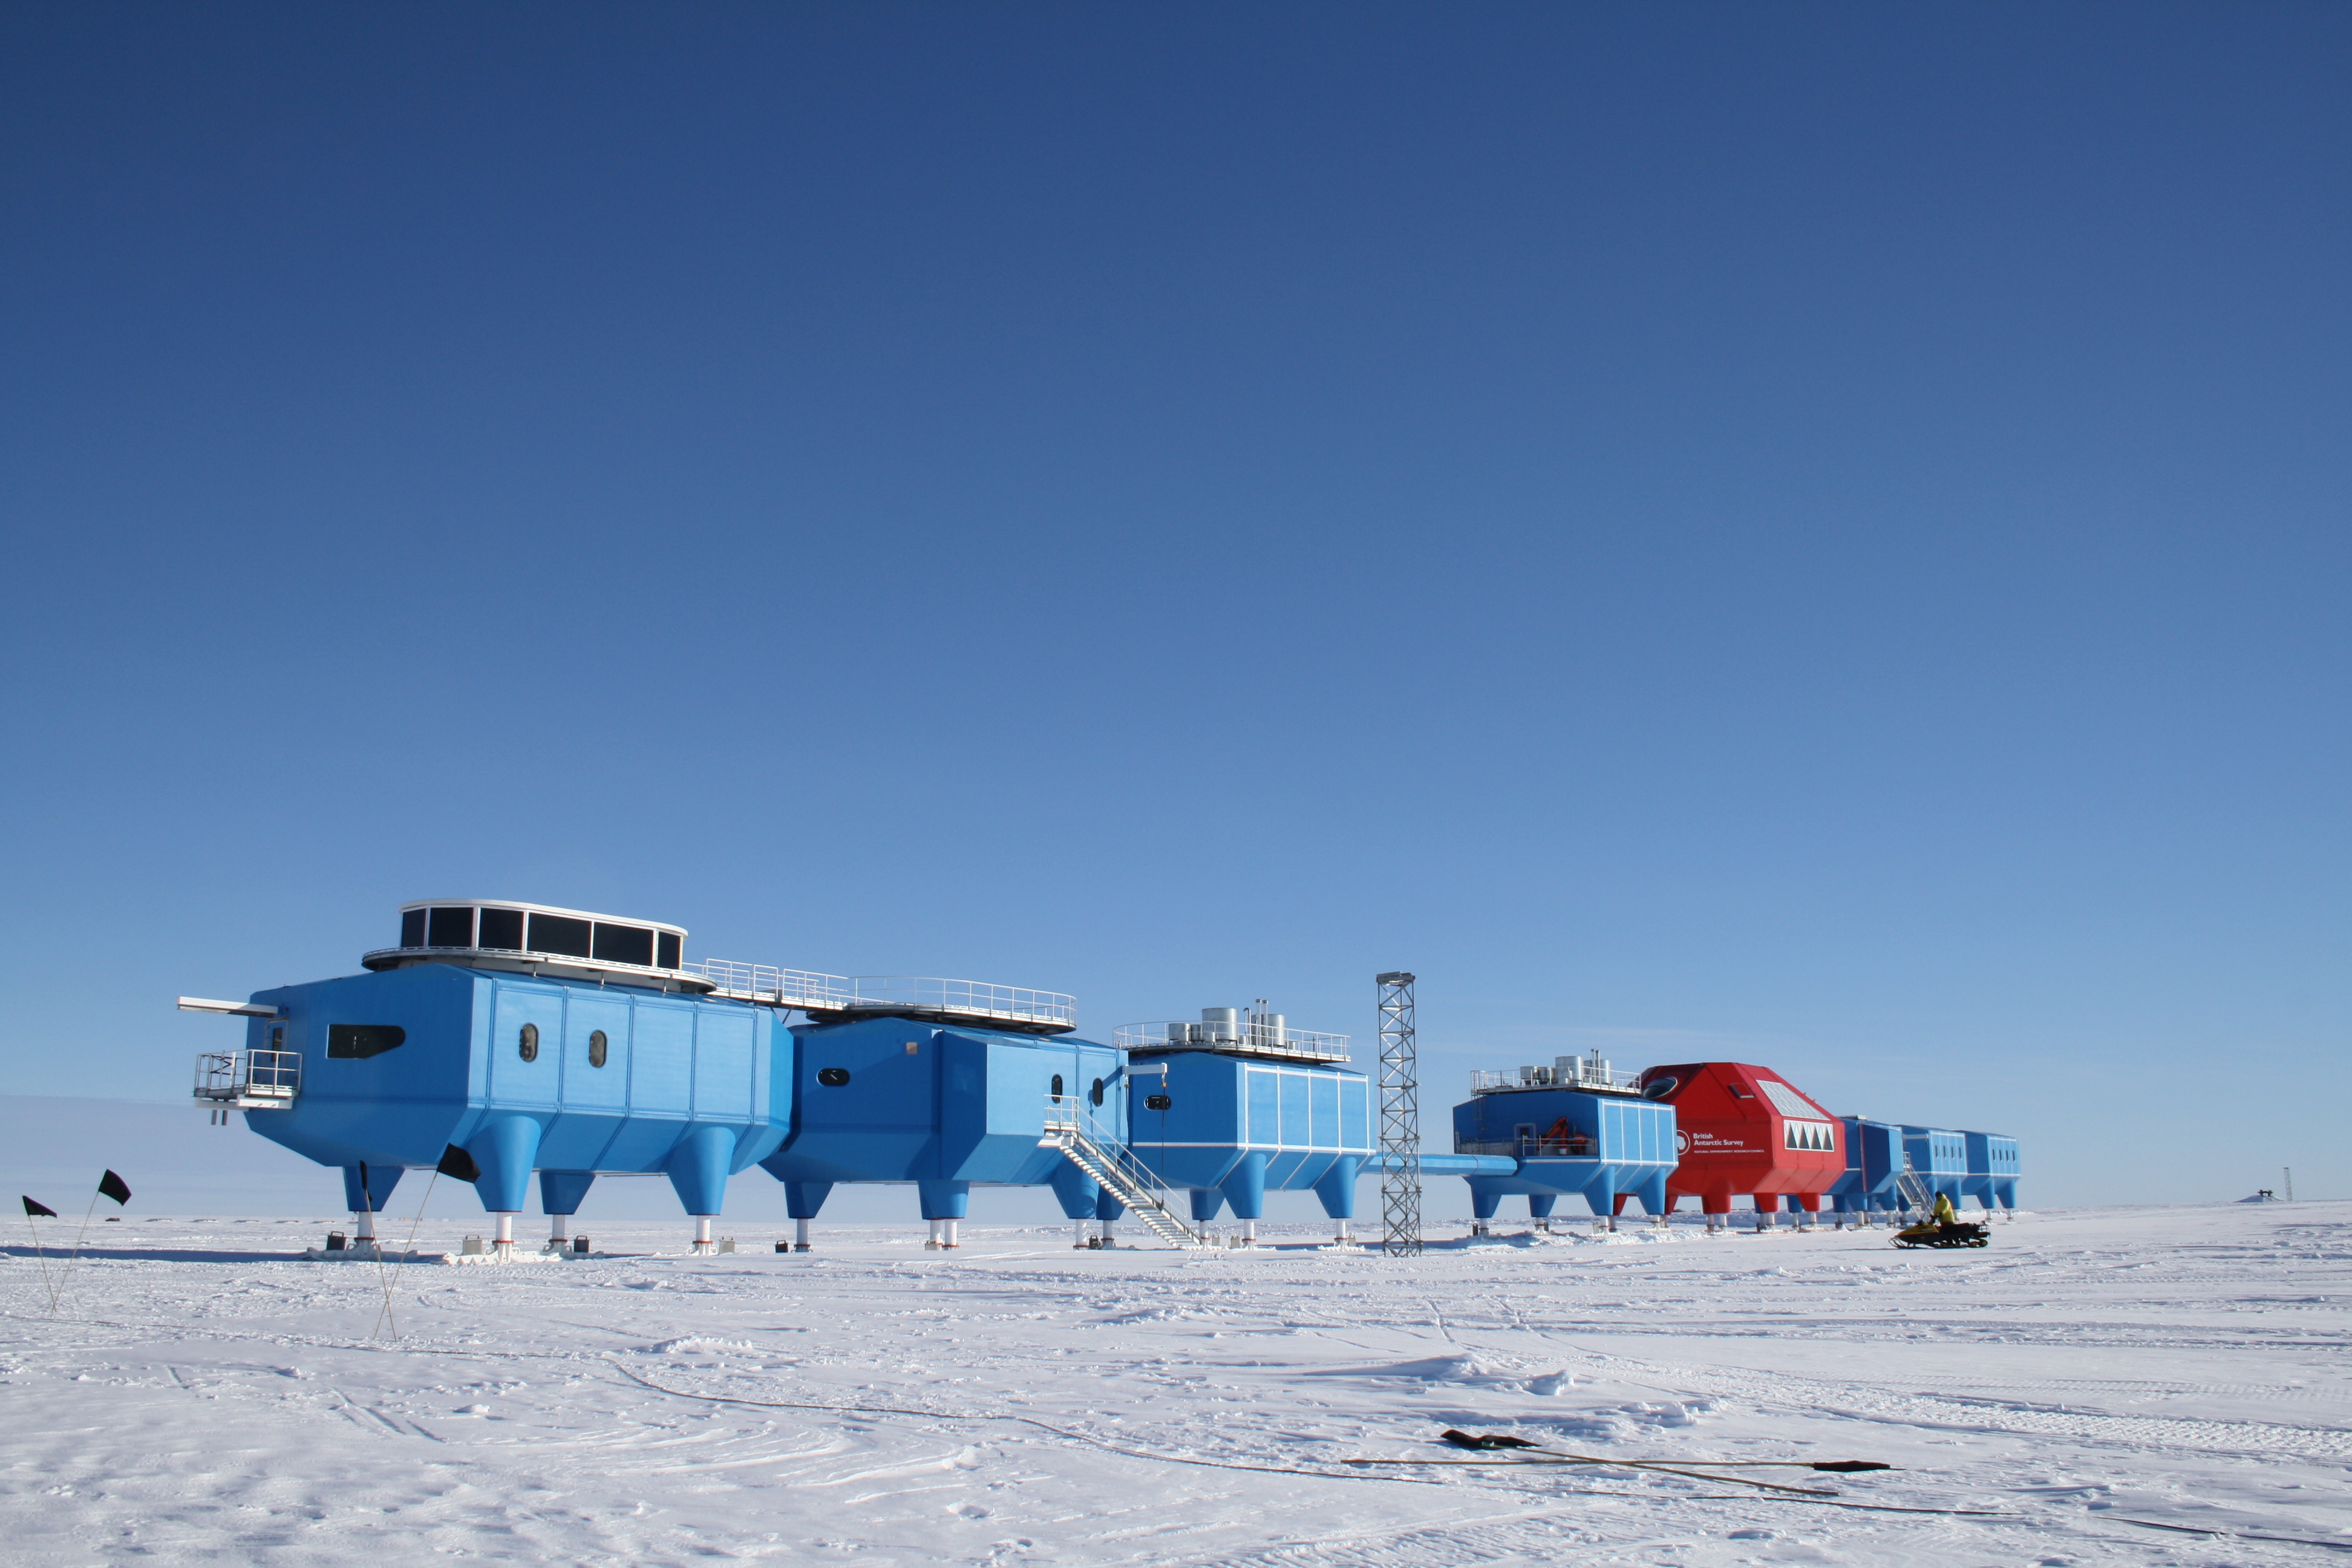 Антарктический научно исследовательский. Полярная станция Амундсен-Скотт. Научная станция Восток в Антарктиде. Антарктида станция Halley. Полярная станция Восток в Антарктиде.